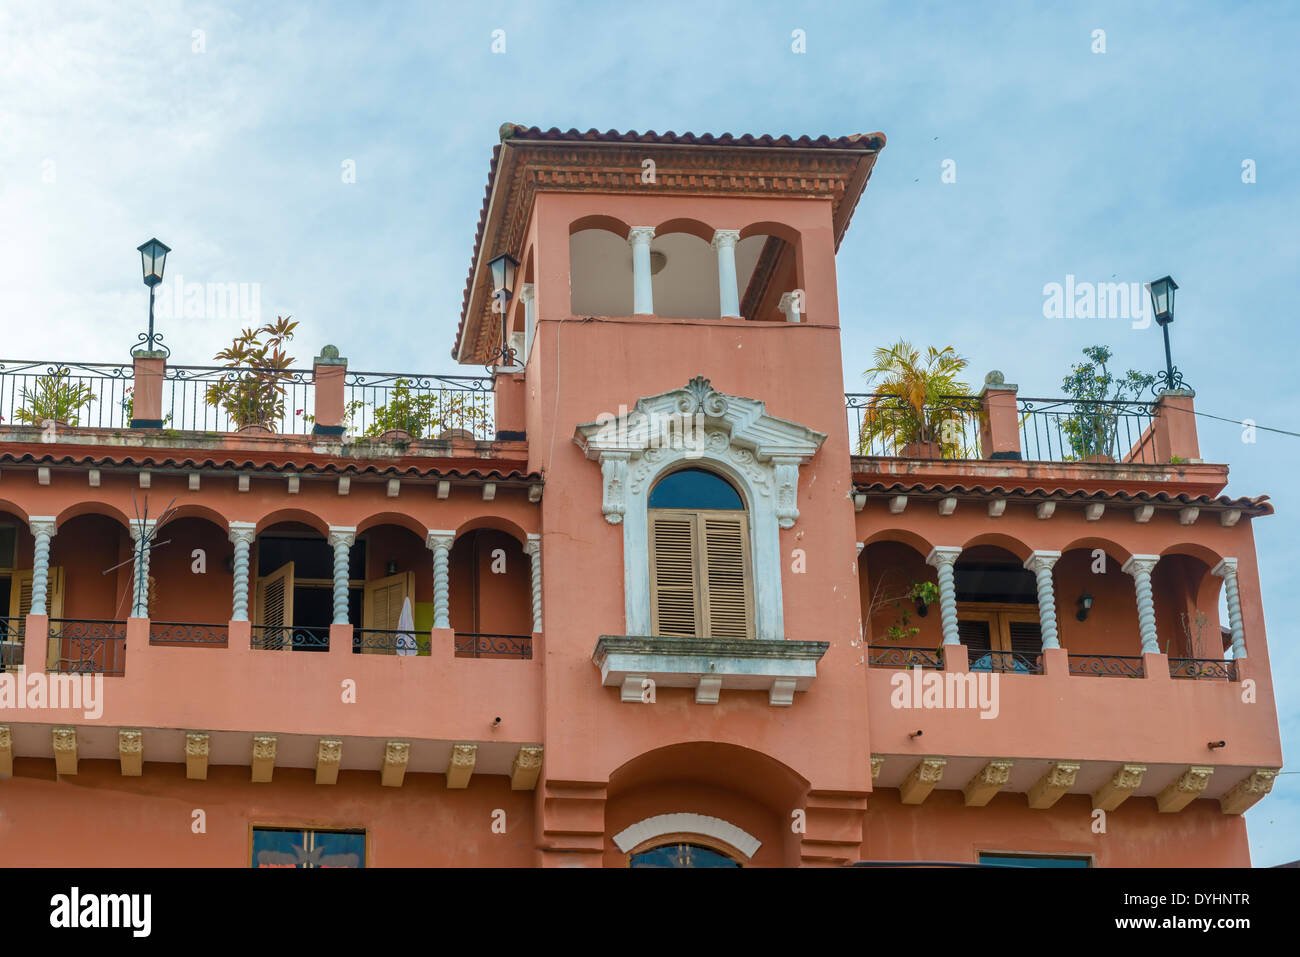 Dettaglio di una casa coloniale. Balcone con fiori e piante, Casco Viejo, Panama City, Panama Foto Stock